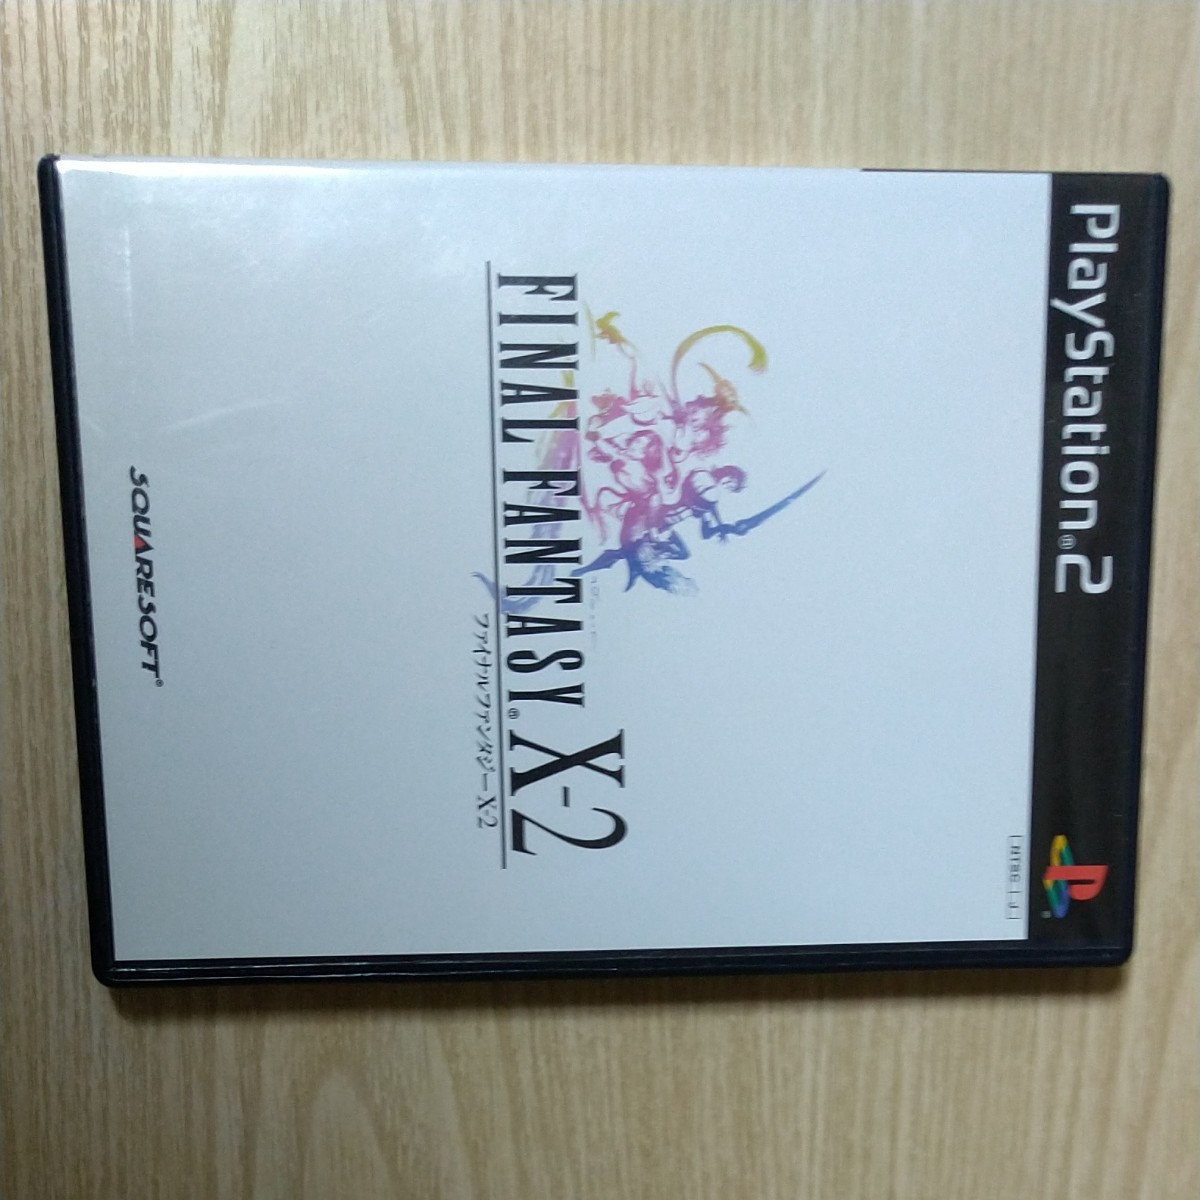 【PS2】 ファイナルファンタジーX 、X-2